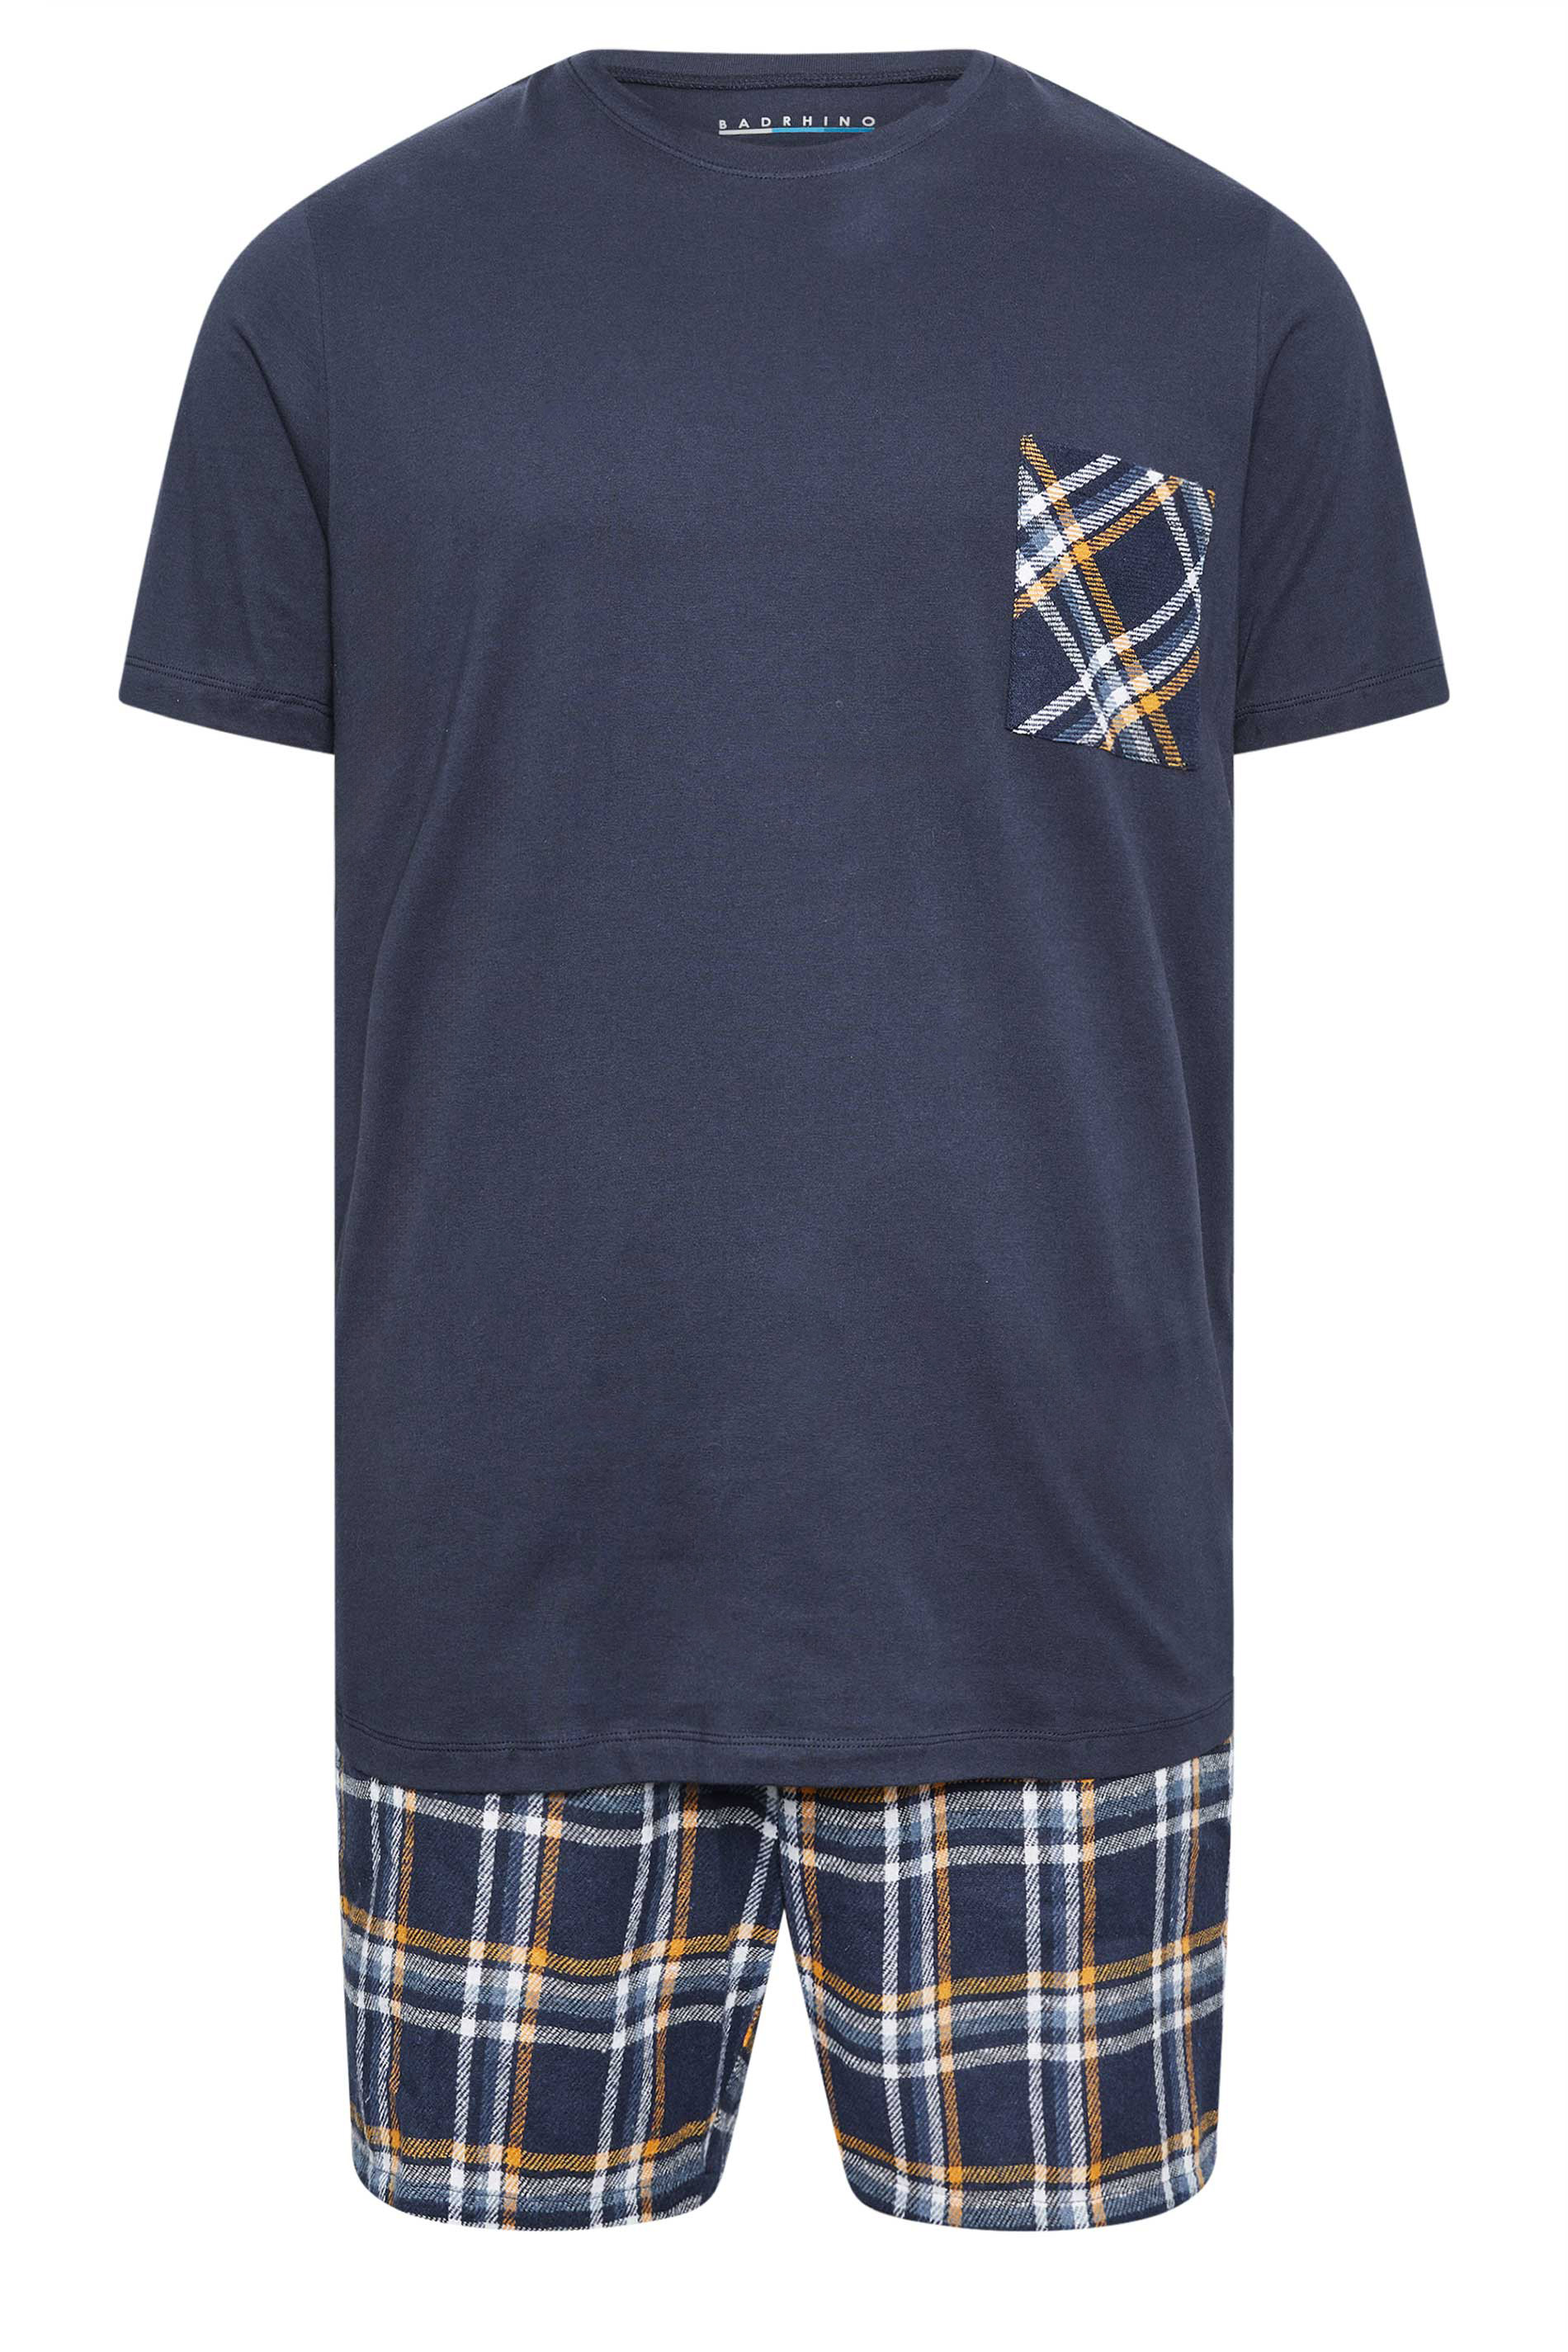 BadRhino Navy Blue Shorts and T-Shirt Pyjama Set | BadRhino